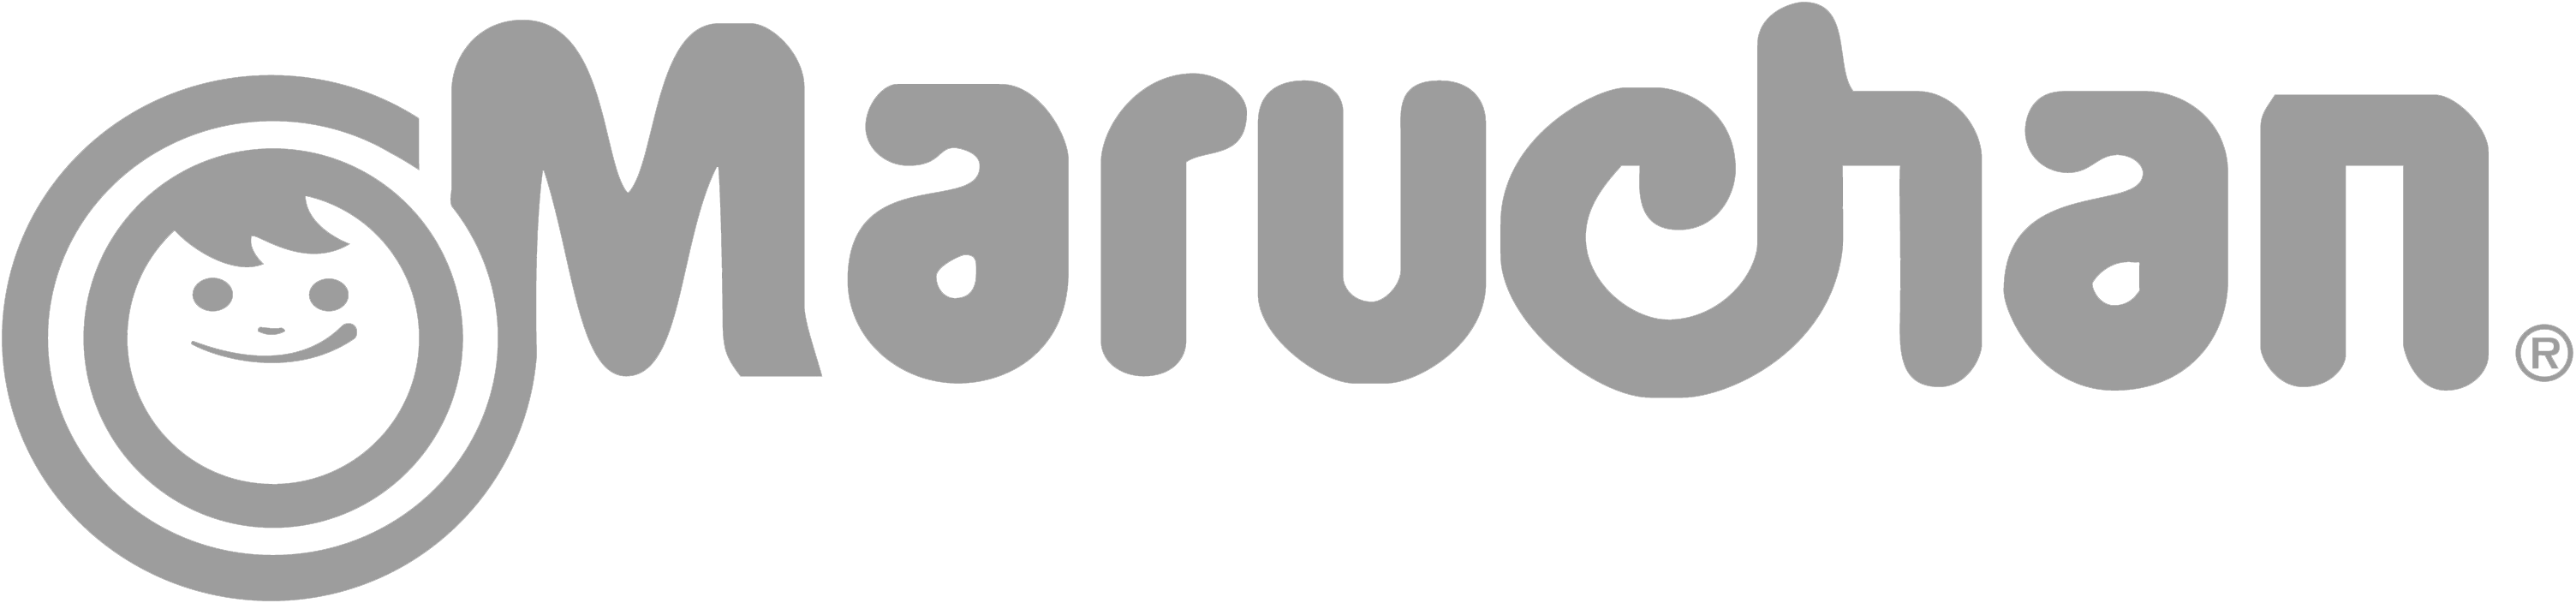 Maruchan_Inc_Logo